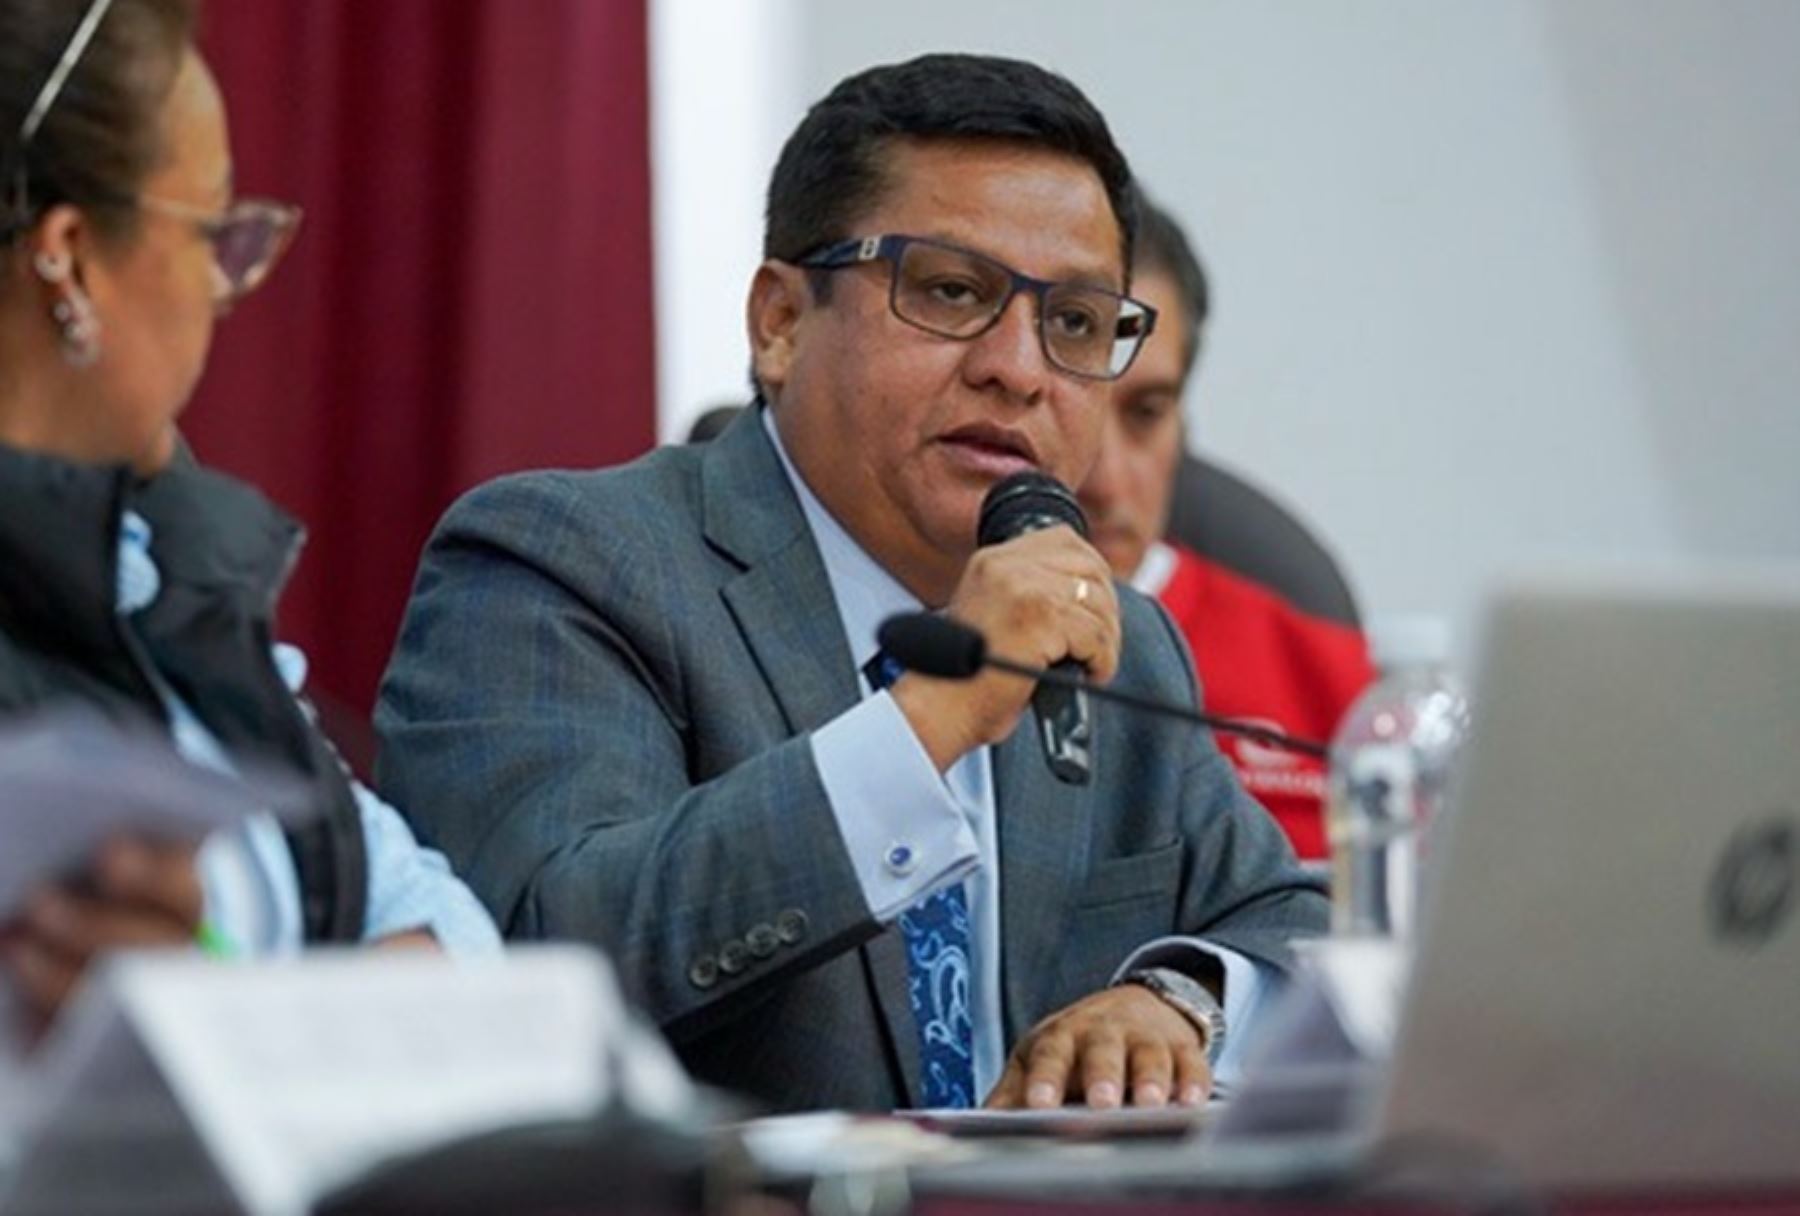 El ministro de Salud, César Vásquez, destacó que el Minsa, a través del Seguro Integral de Salud (SIS), continúa financiando la atención de los servicios de salud de los pacientes más vulnerables y humildes.